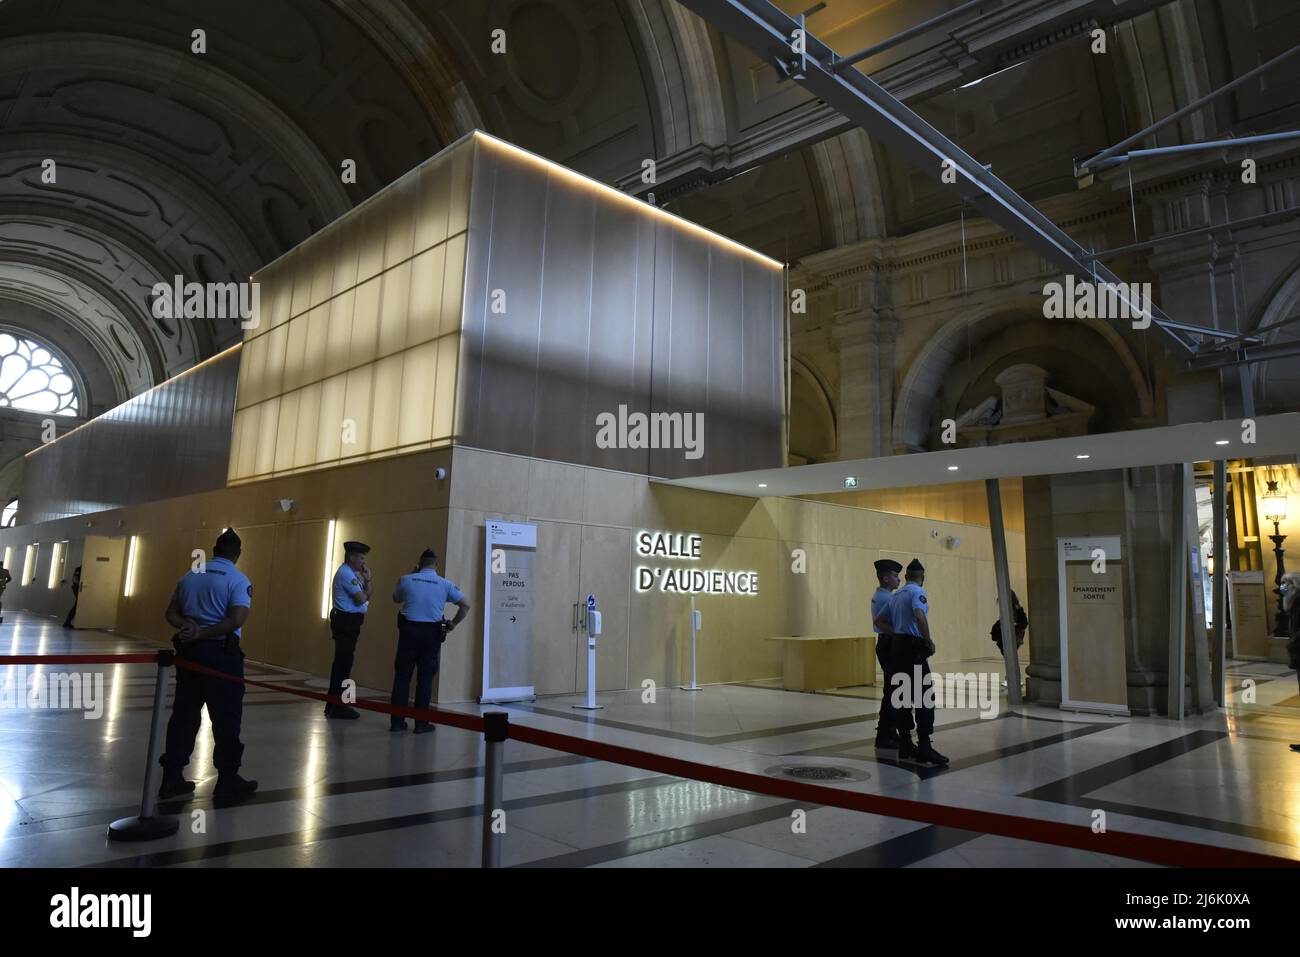 Le procès des attentats de Paris du 13 novembre - Bataclan se poursuit au palais de justice de Paris, en France, le 02 mai 2022. Photo de Patrice Pierrot/ABACApRESS.COM Banque D'Images